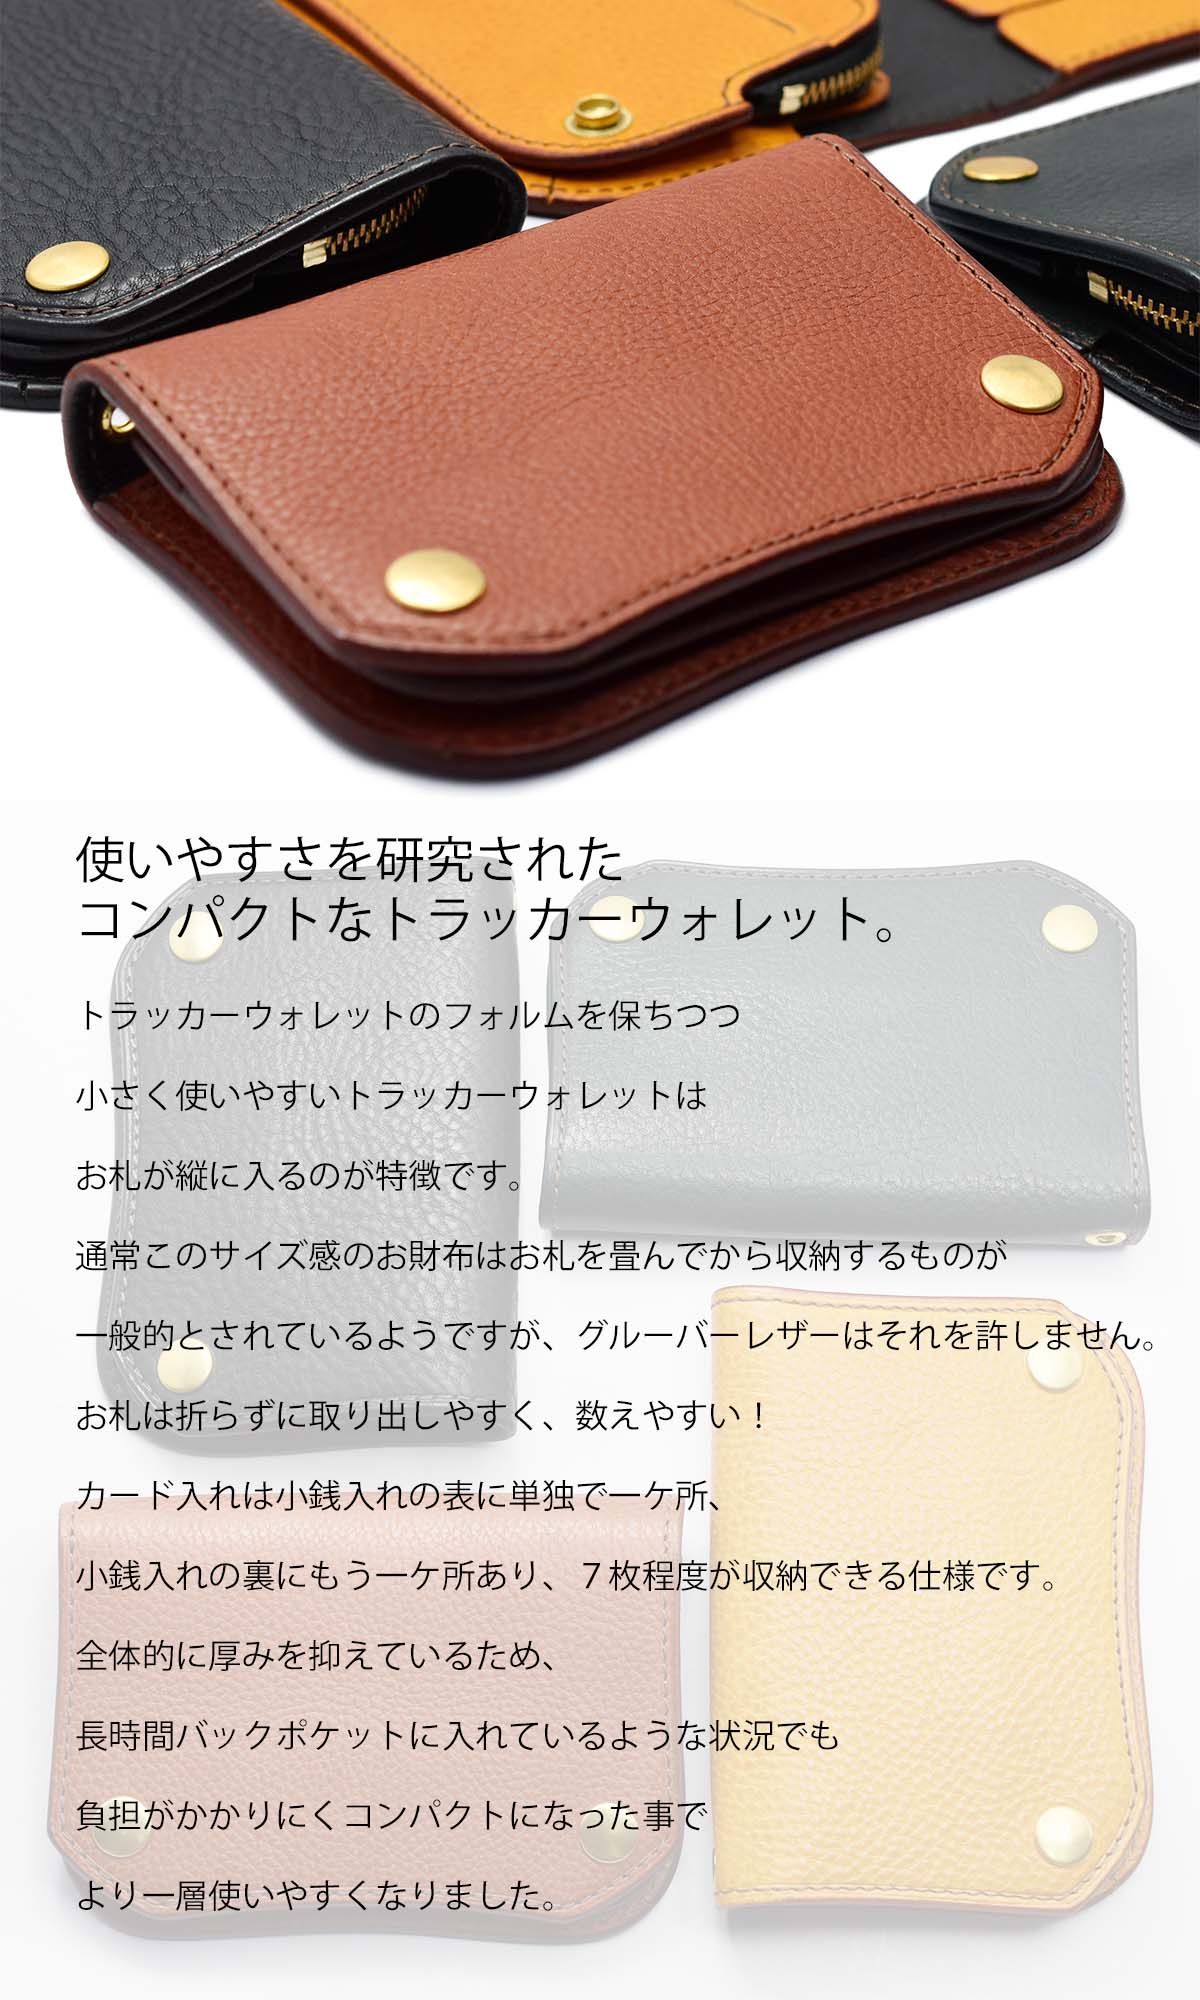 ショートトラッカーウォレット イタリアンレザー グルーバーレザー 日本製 本革 二つ折り財布 ミニ財布 Groover Leather GTS-100  ミニウォレット :gl-gts-100:CHAOS accessory 通販 